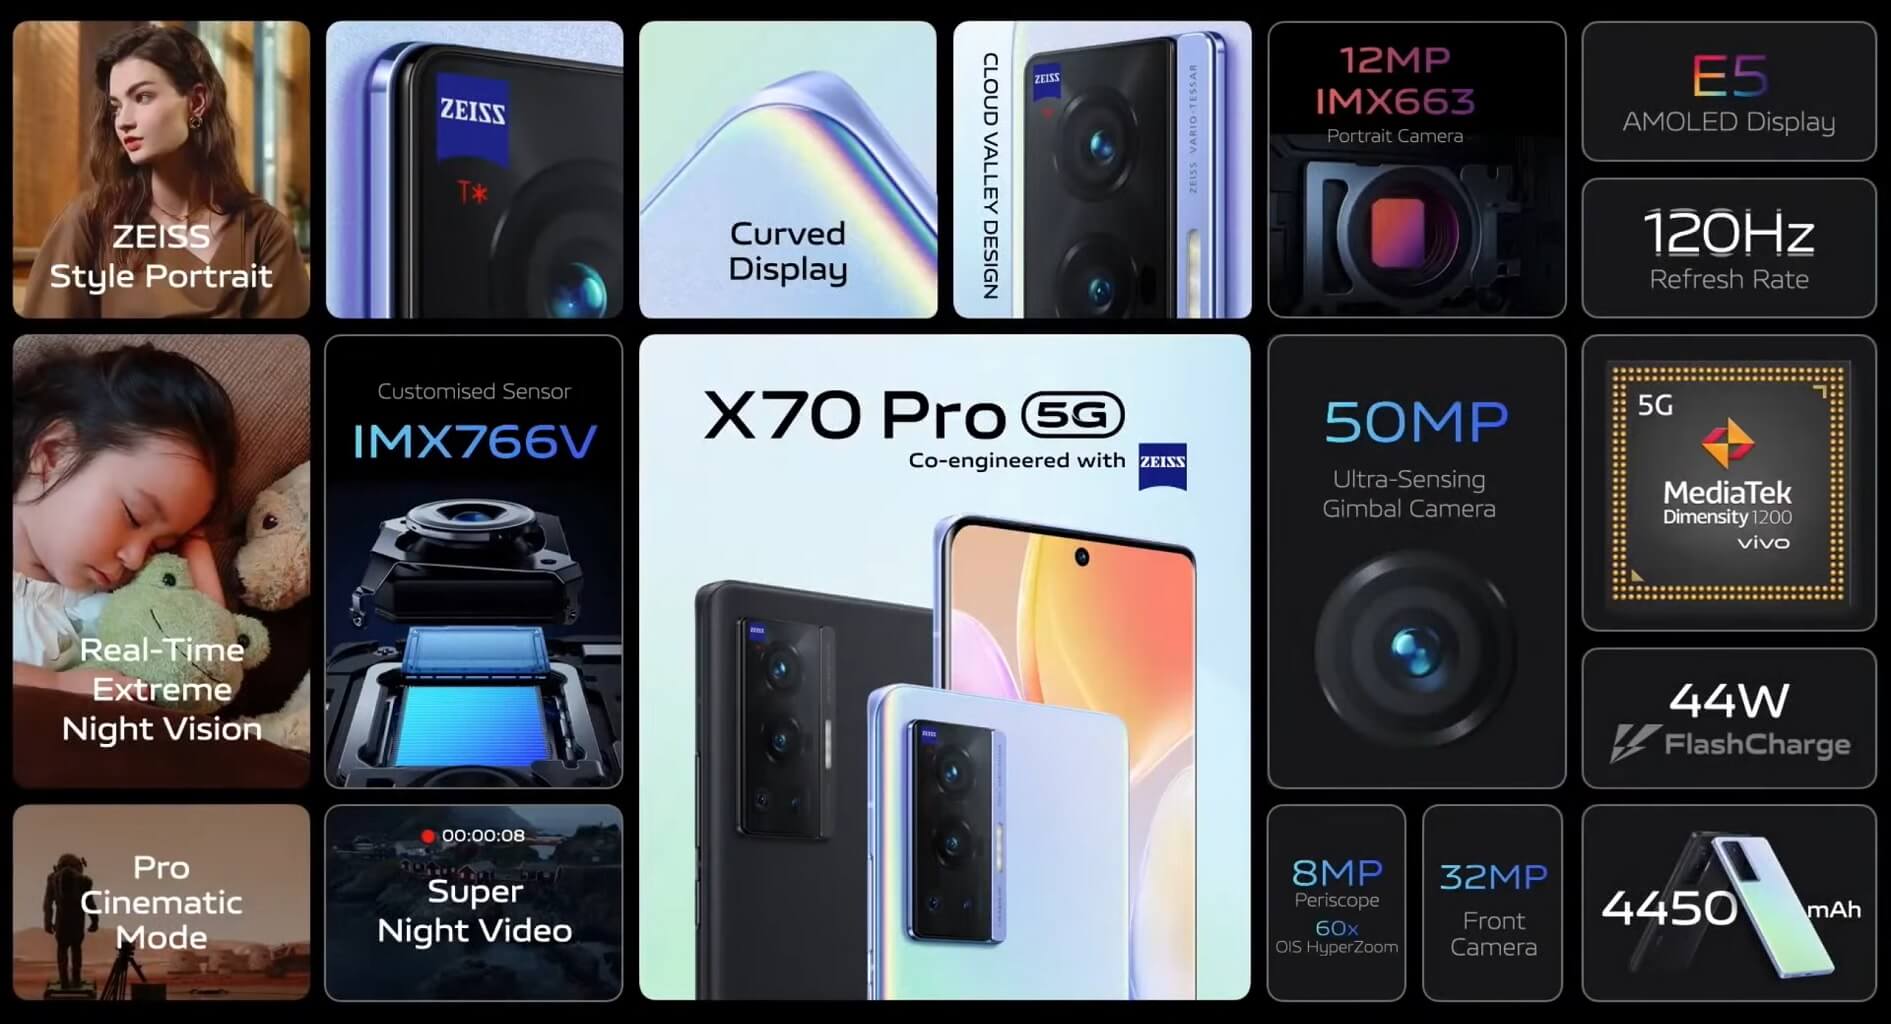 Vivo X70 Pro features